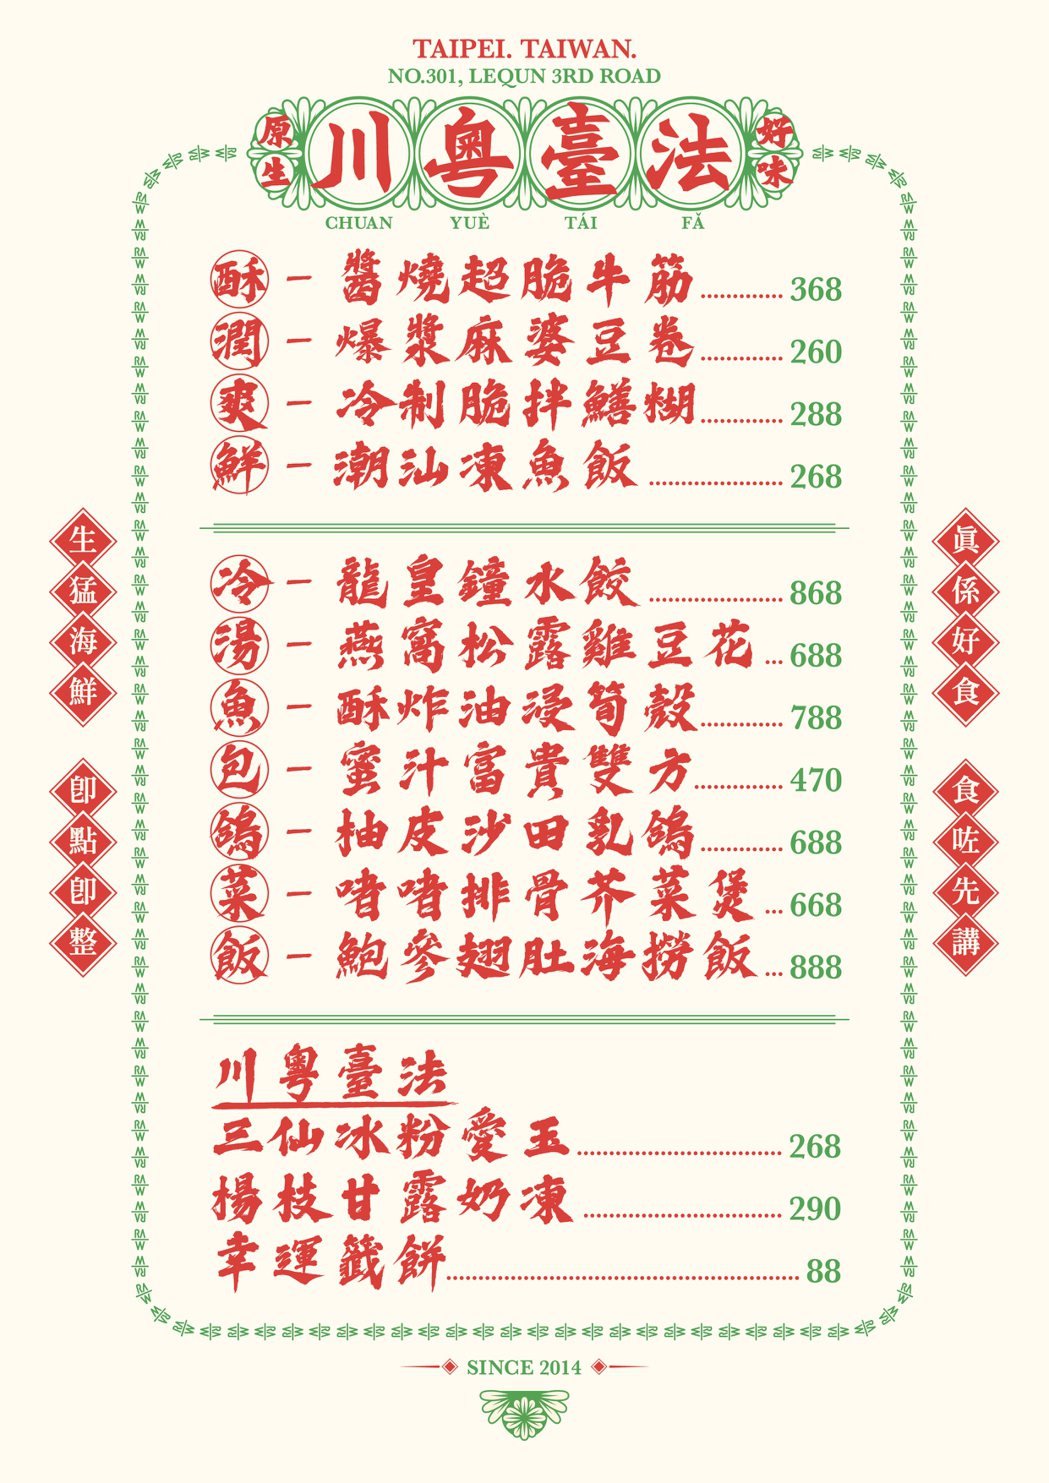 印在特製圍裙上的「川粵臺法」菜單。圖／RAW提供